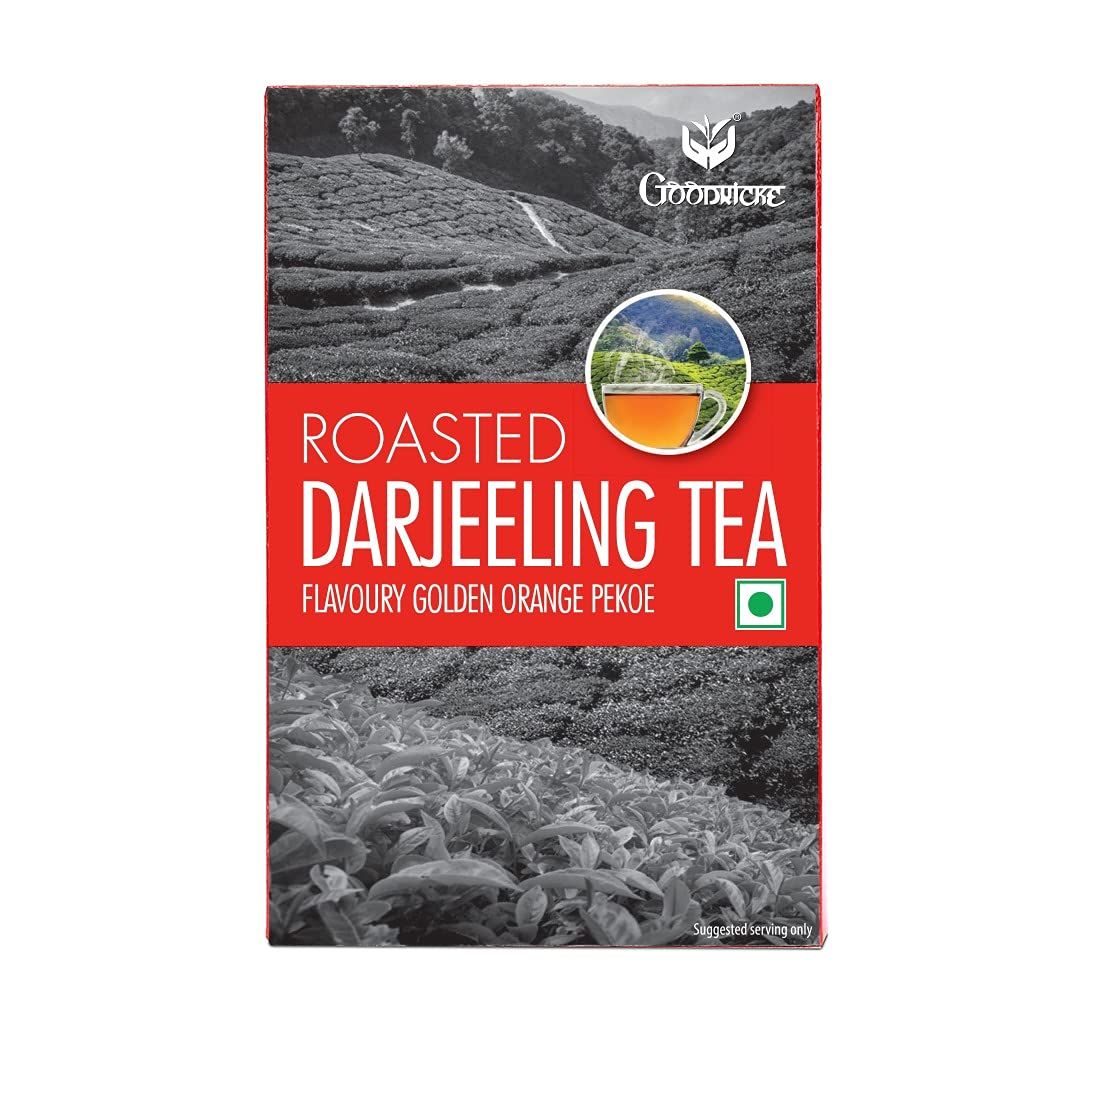 Goodricke Roasted Darjeeling Tea Image